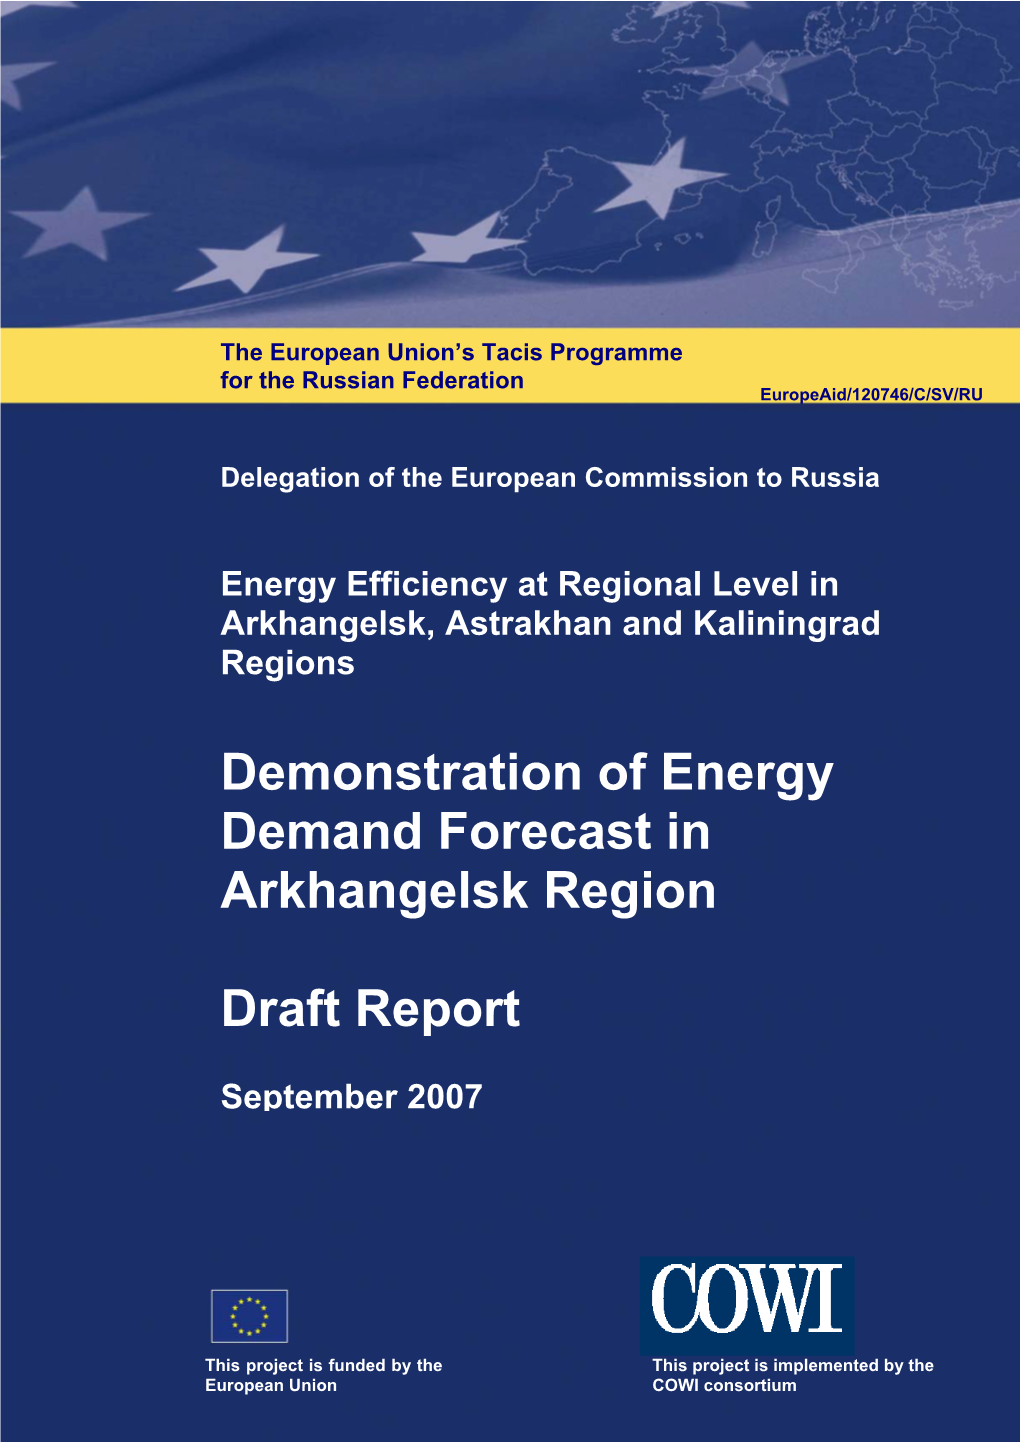 Demonstration of Energy Demand Forecast in Arkhangelsk Region